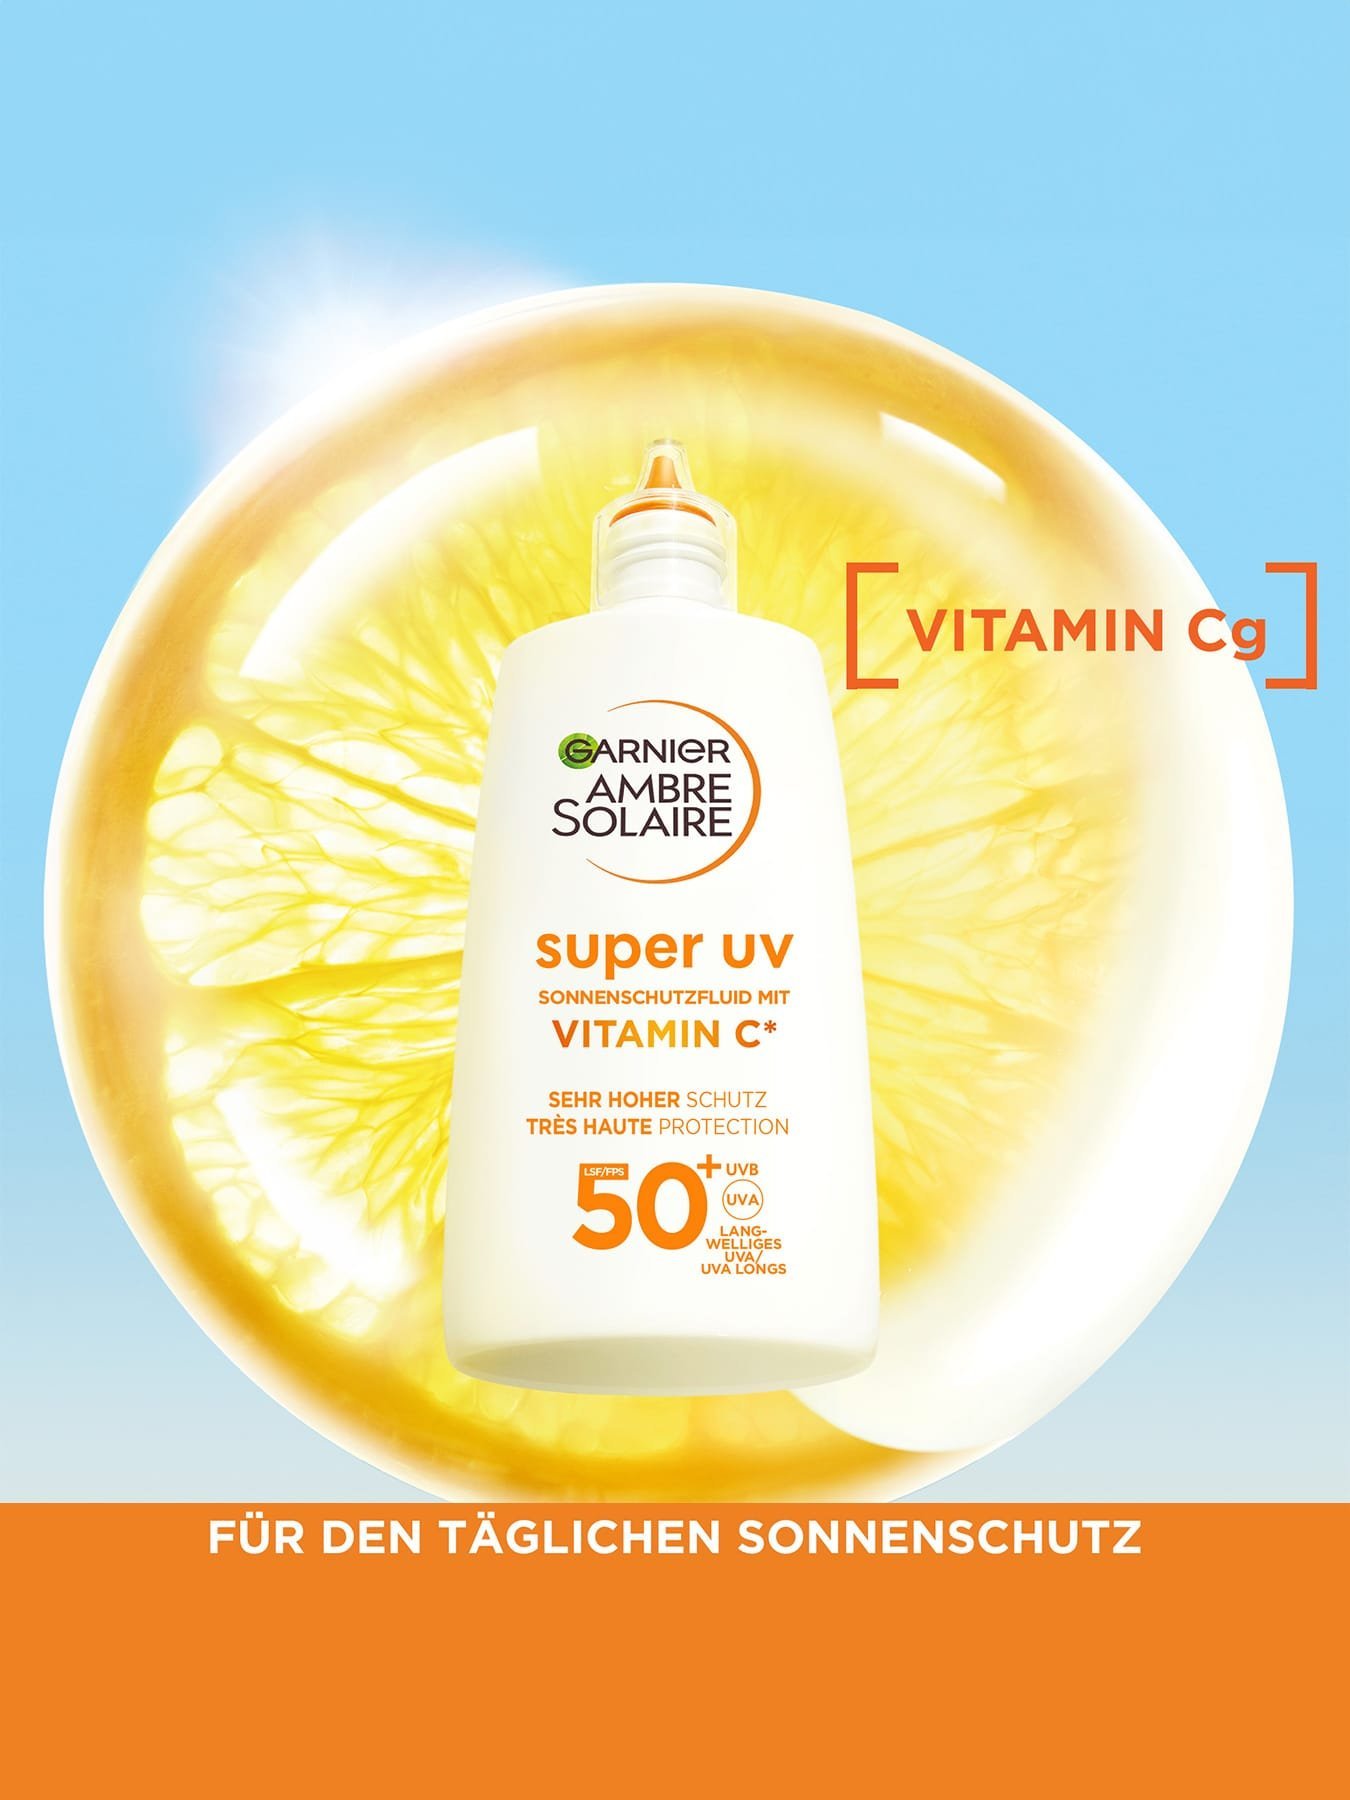 Produkt vor einer Zitronenscheibe mit Produktvorteil Vitamin Cg